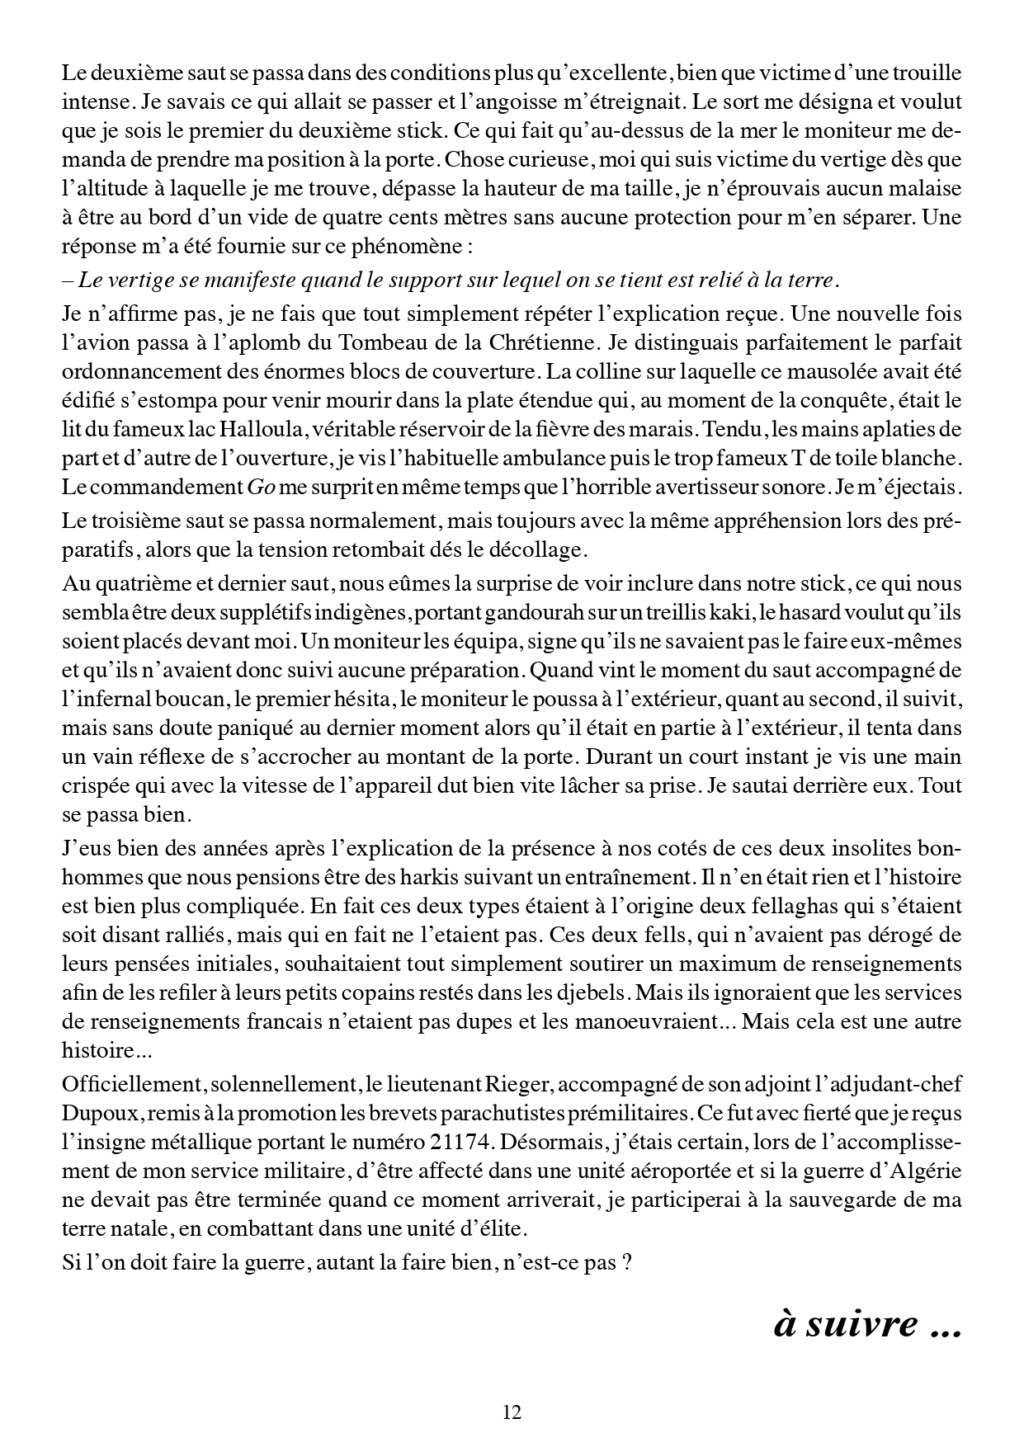 PM PARACHUTISTE de Pierre JARRIGE juin 2016 en ALGERIE française...!!! Parach30